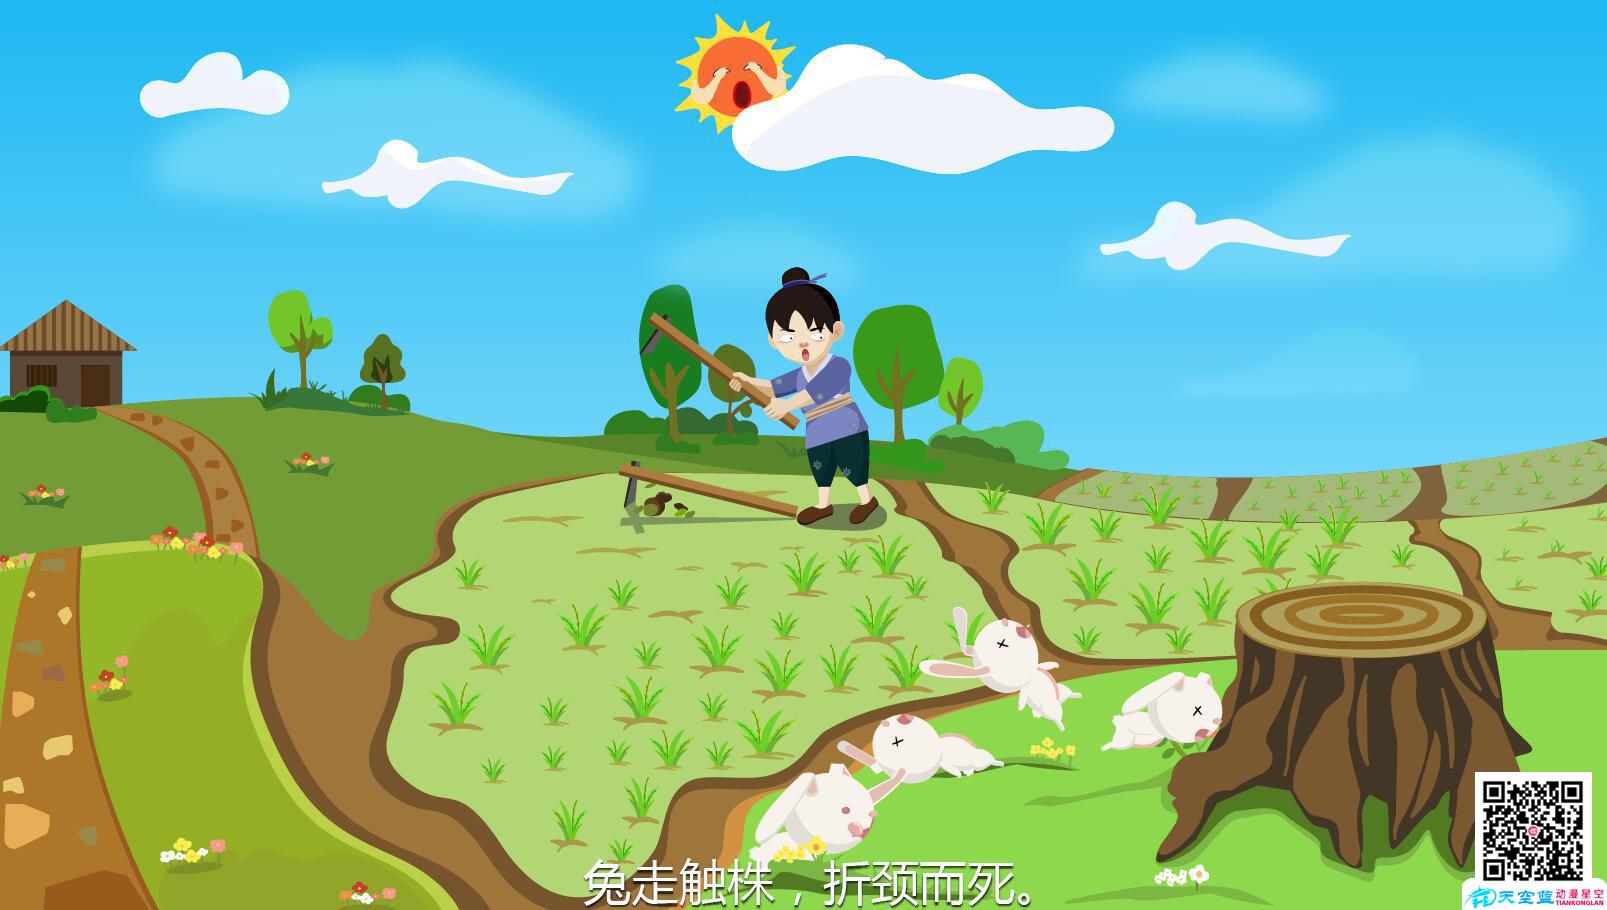 《守株待兔》动画制作原画分镜头农夫发现兔子.jpg